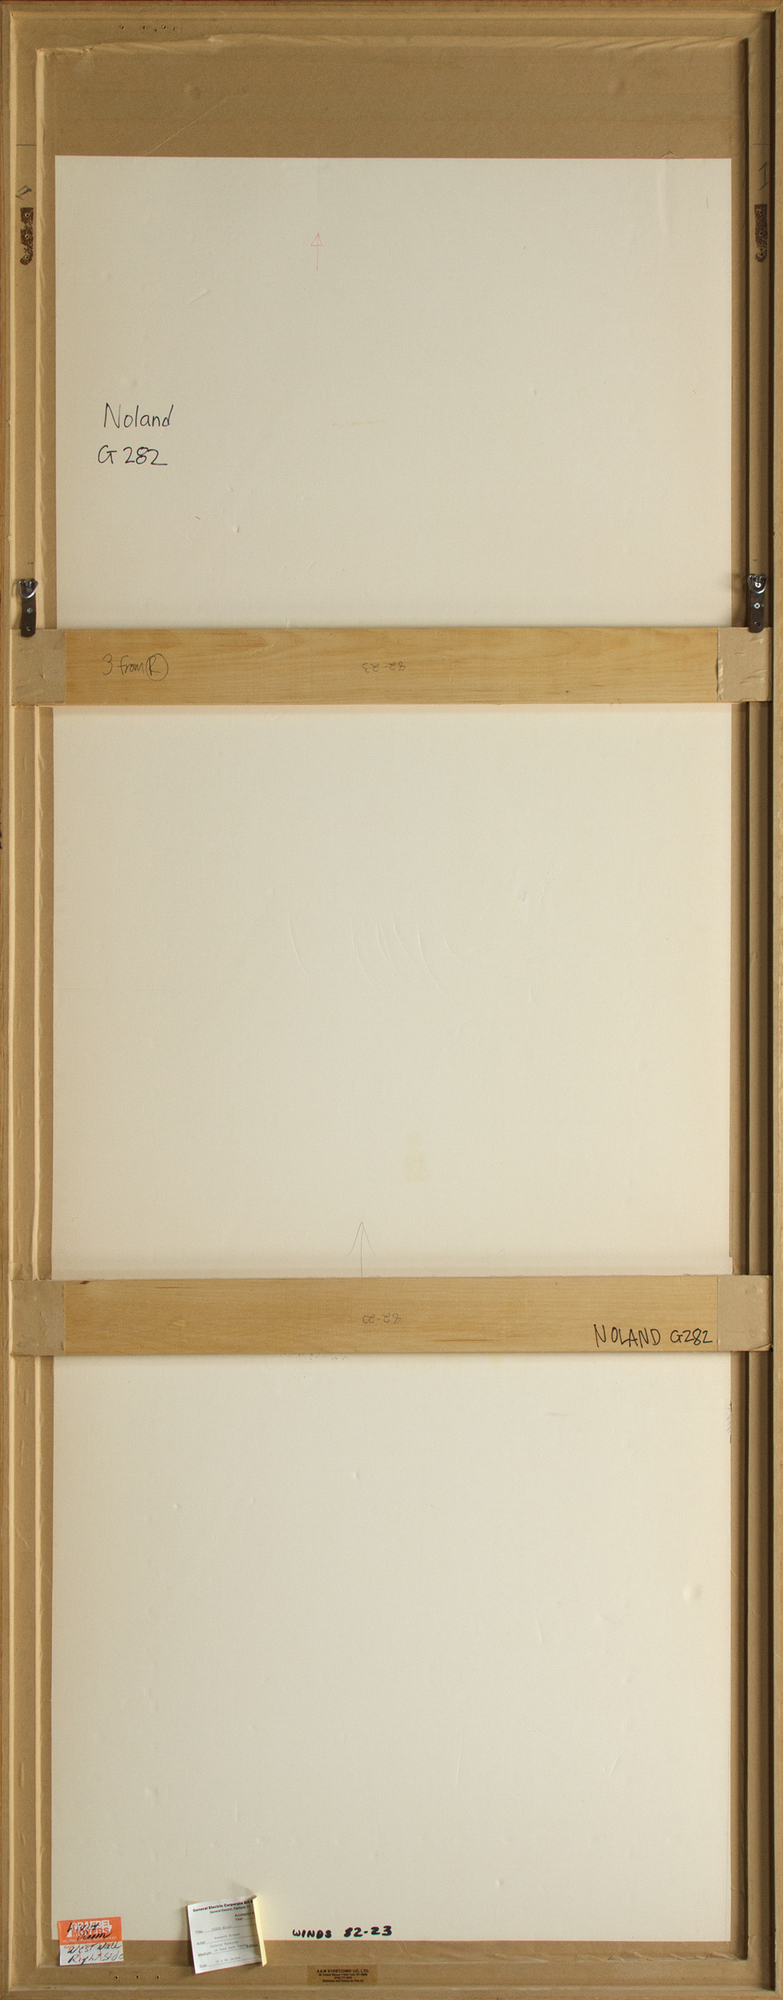 KENNETH NOLAND - Bläser 82-23 - bemalte Monotypie auf Büttenpapier - 86 1/2 x 31 3/8 Zoll